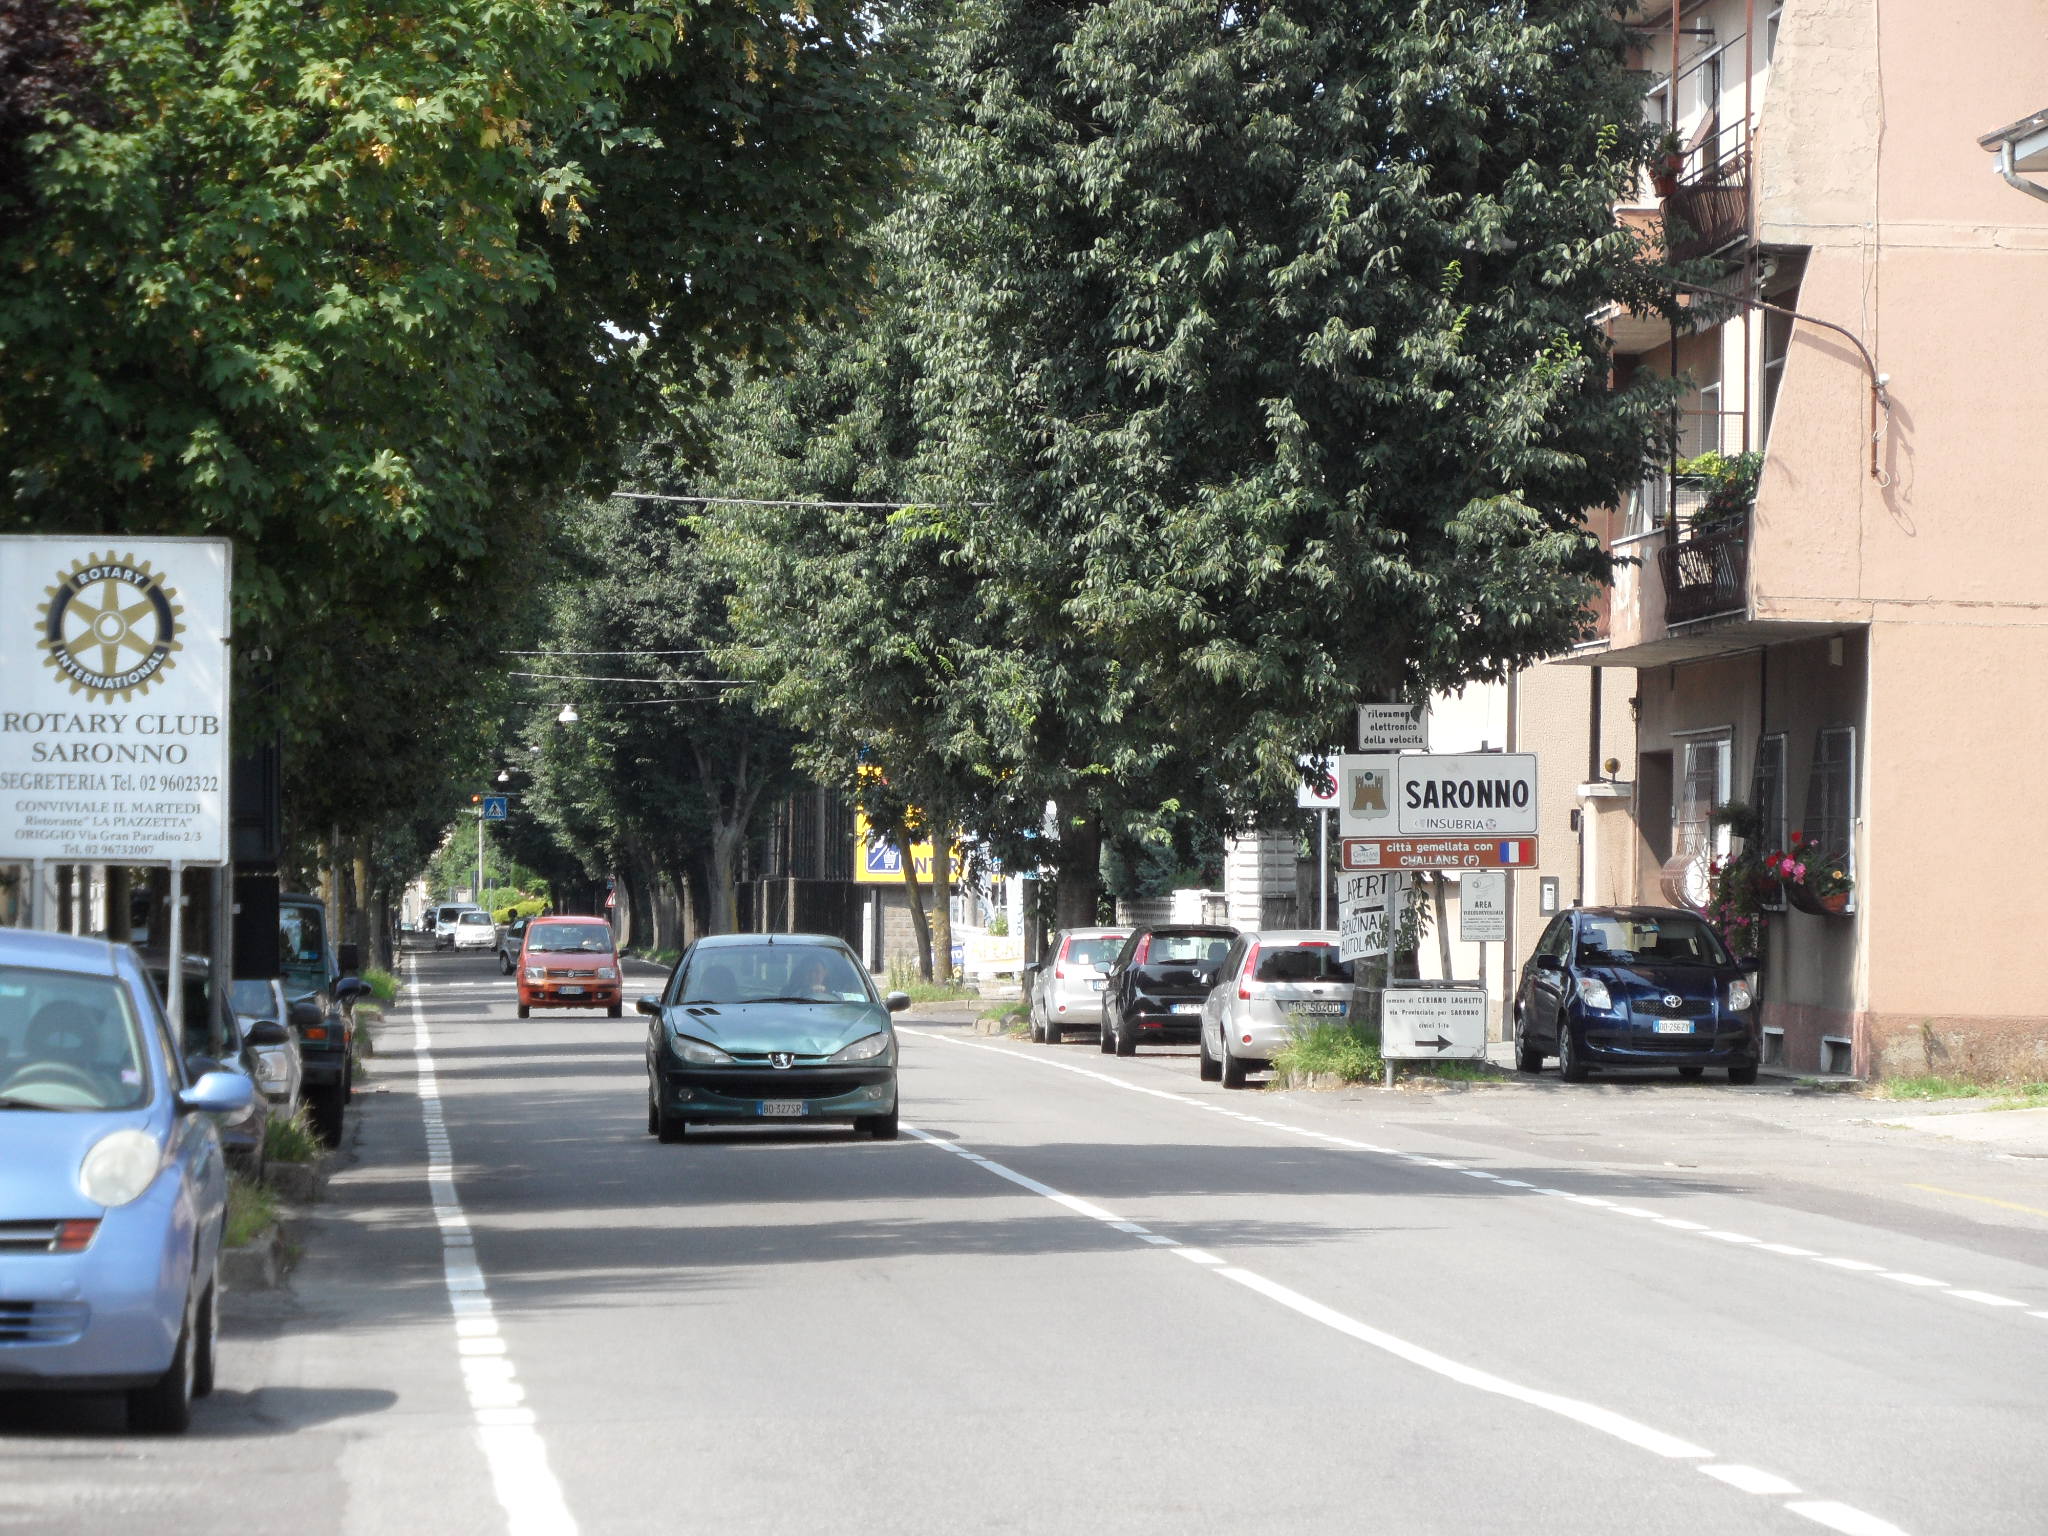 Caos via Roma, Fiab: “Per una ciclabile sicura, non serve tagliare gli alberi”